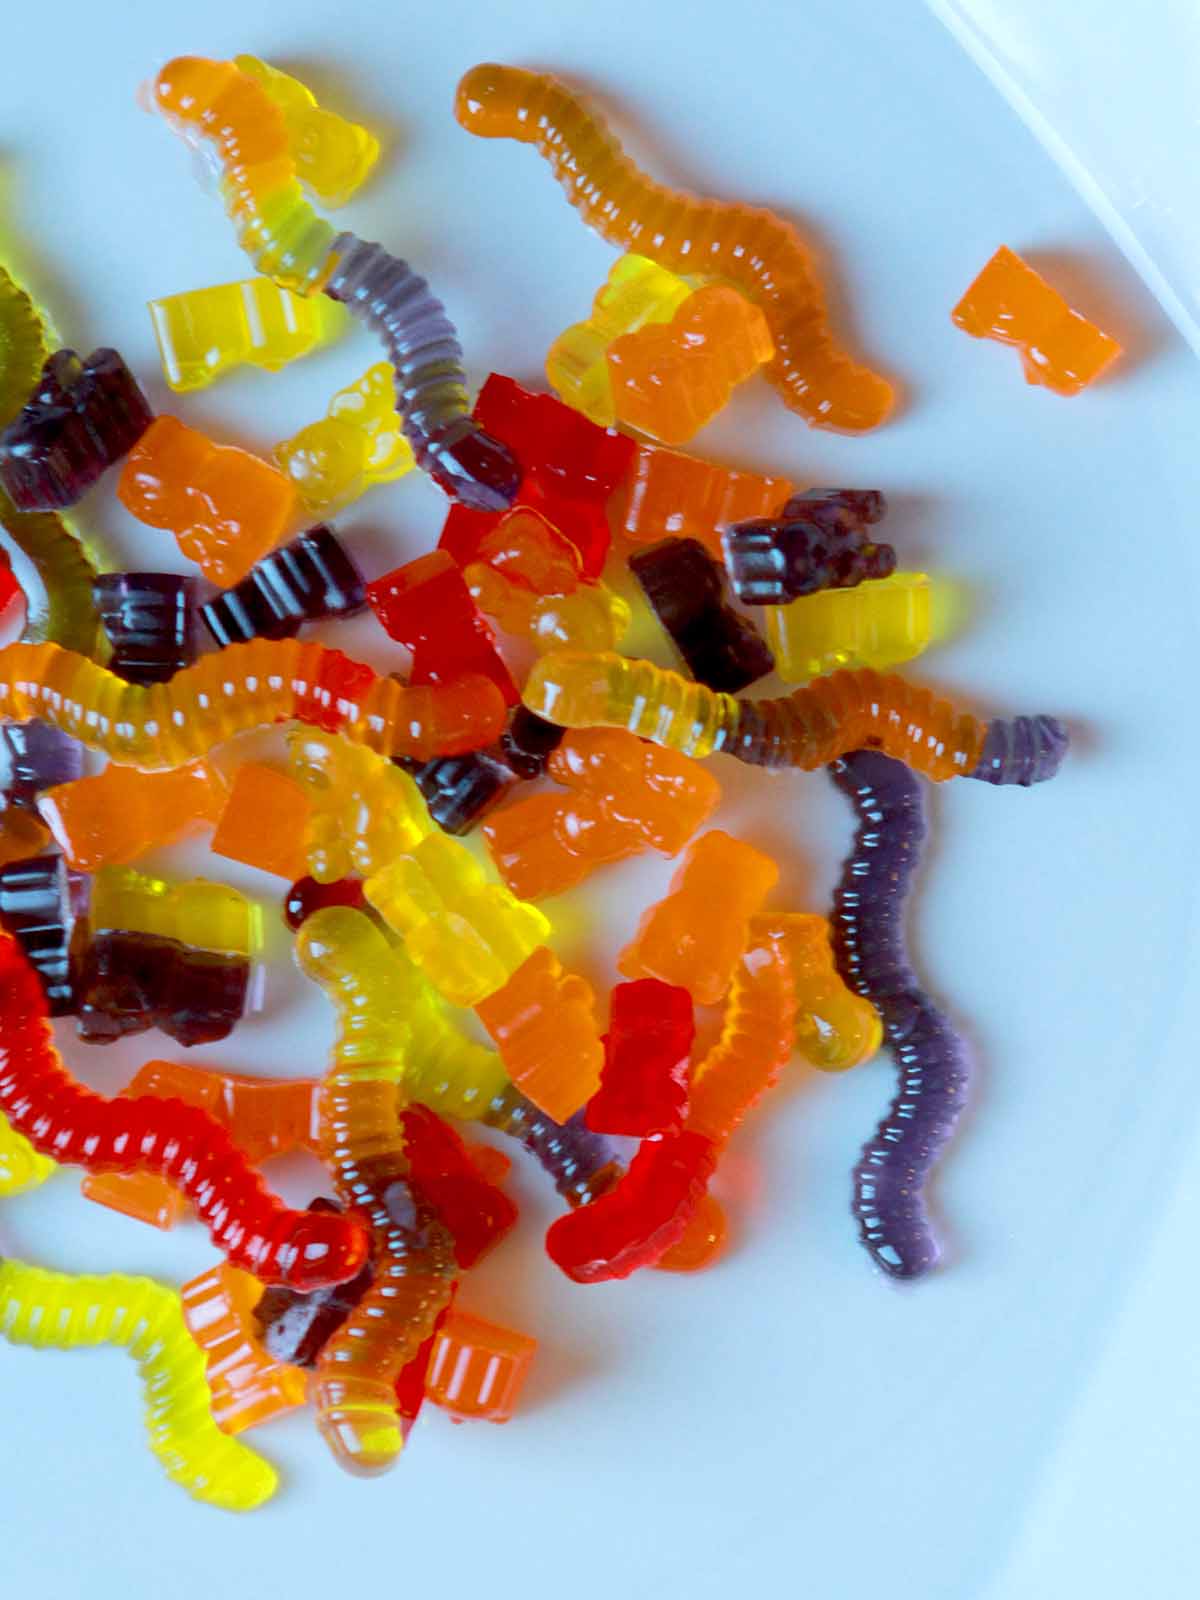 Keto Gummy Bears Recipe, Keto Recipes